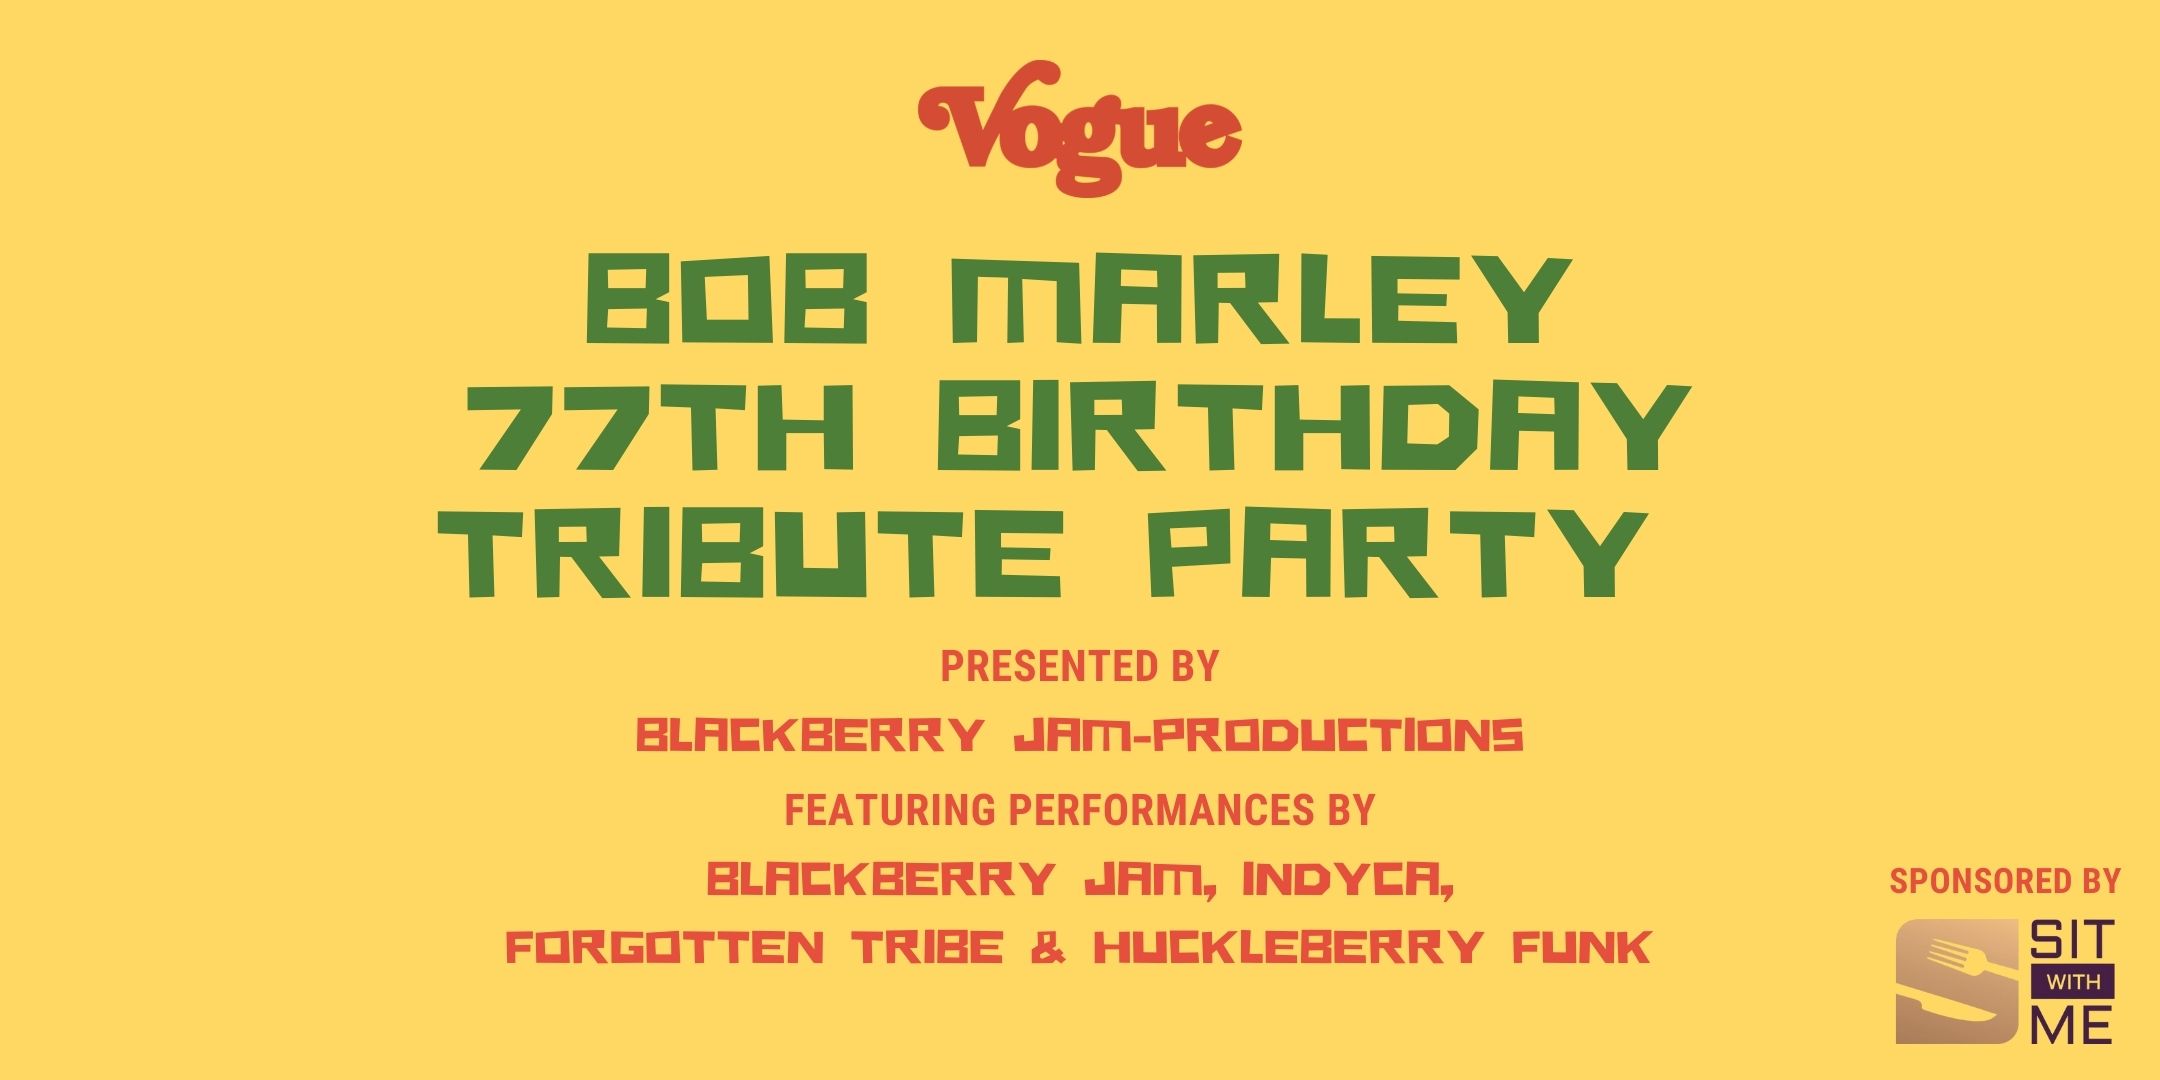 Bob Marley's 77th Birthday Celebration